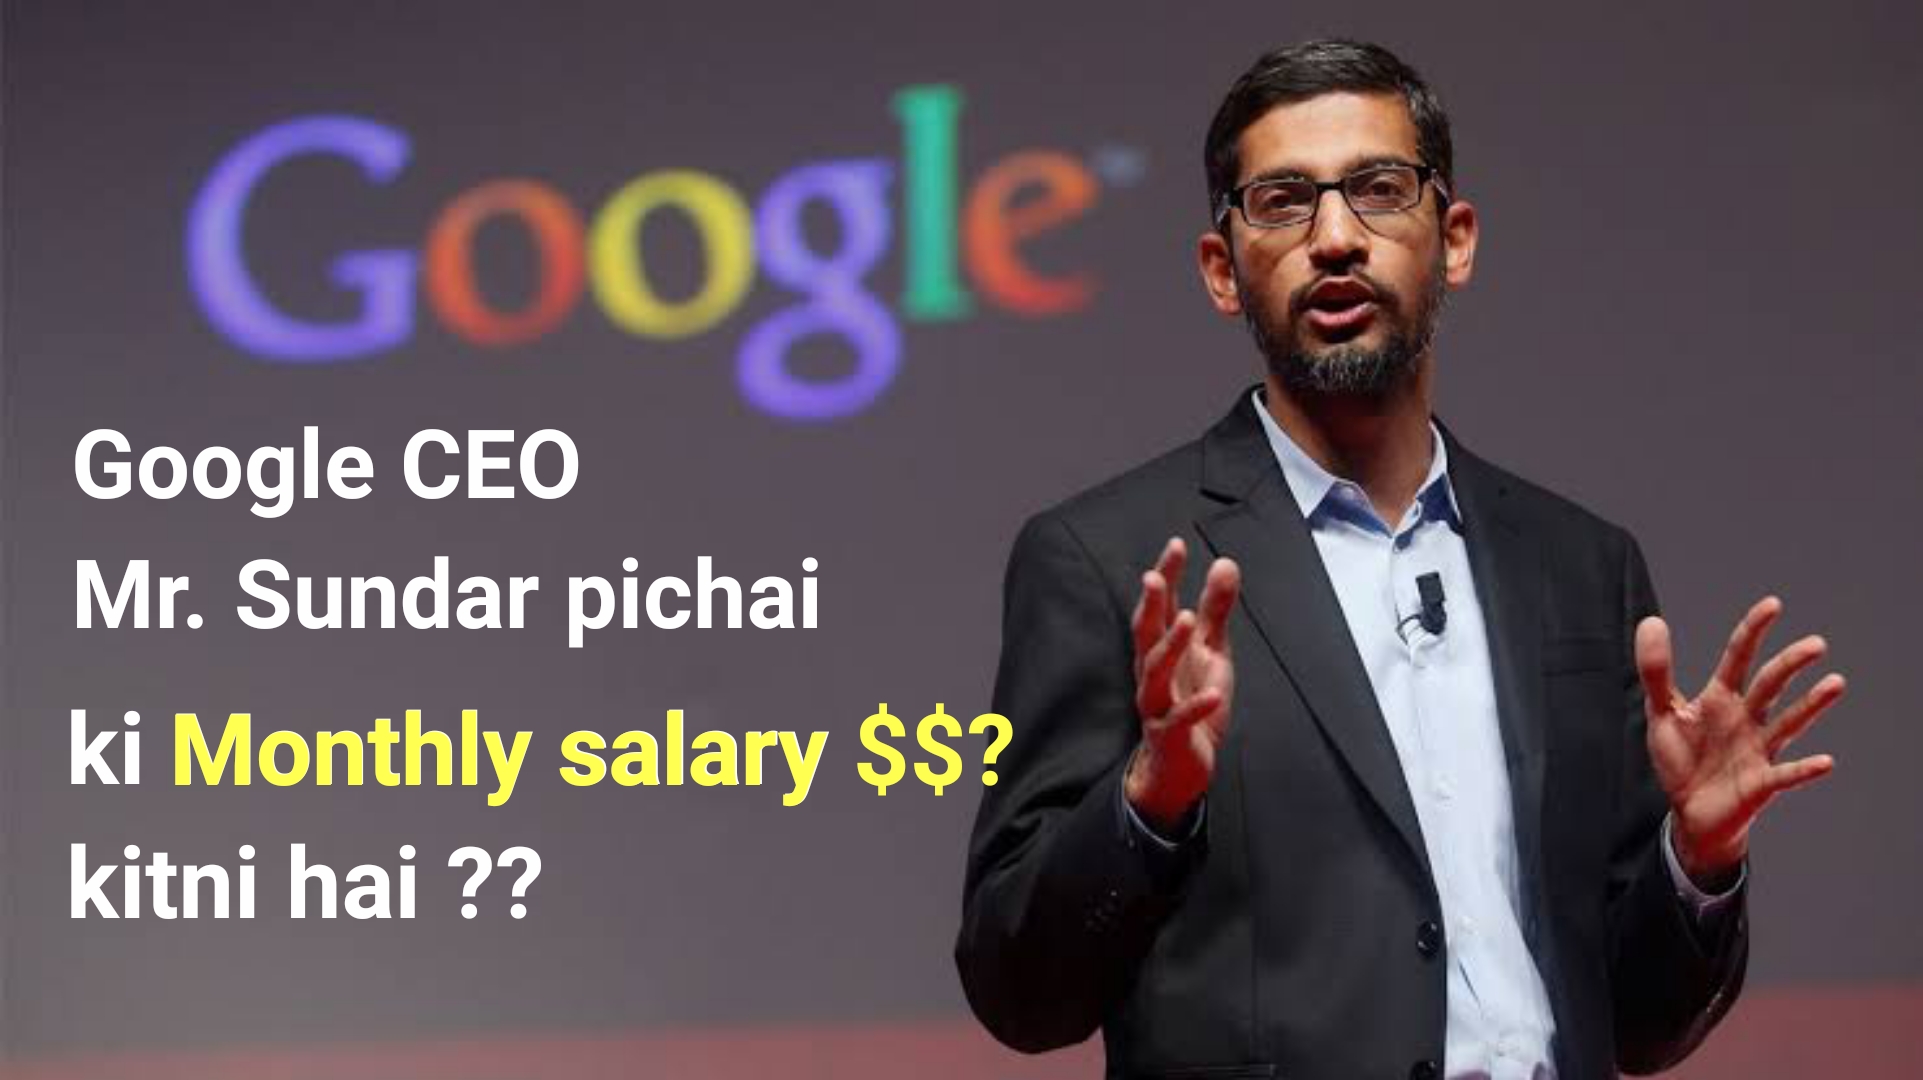 Google CEO Sundar pichai salary 2022 गूगल के सिइओ सुंदर पिचाई का